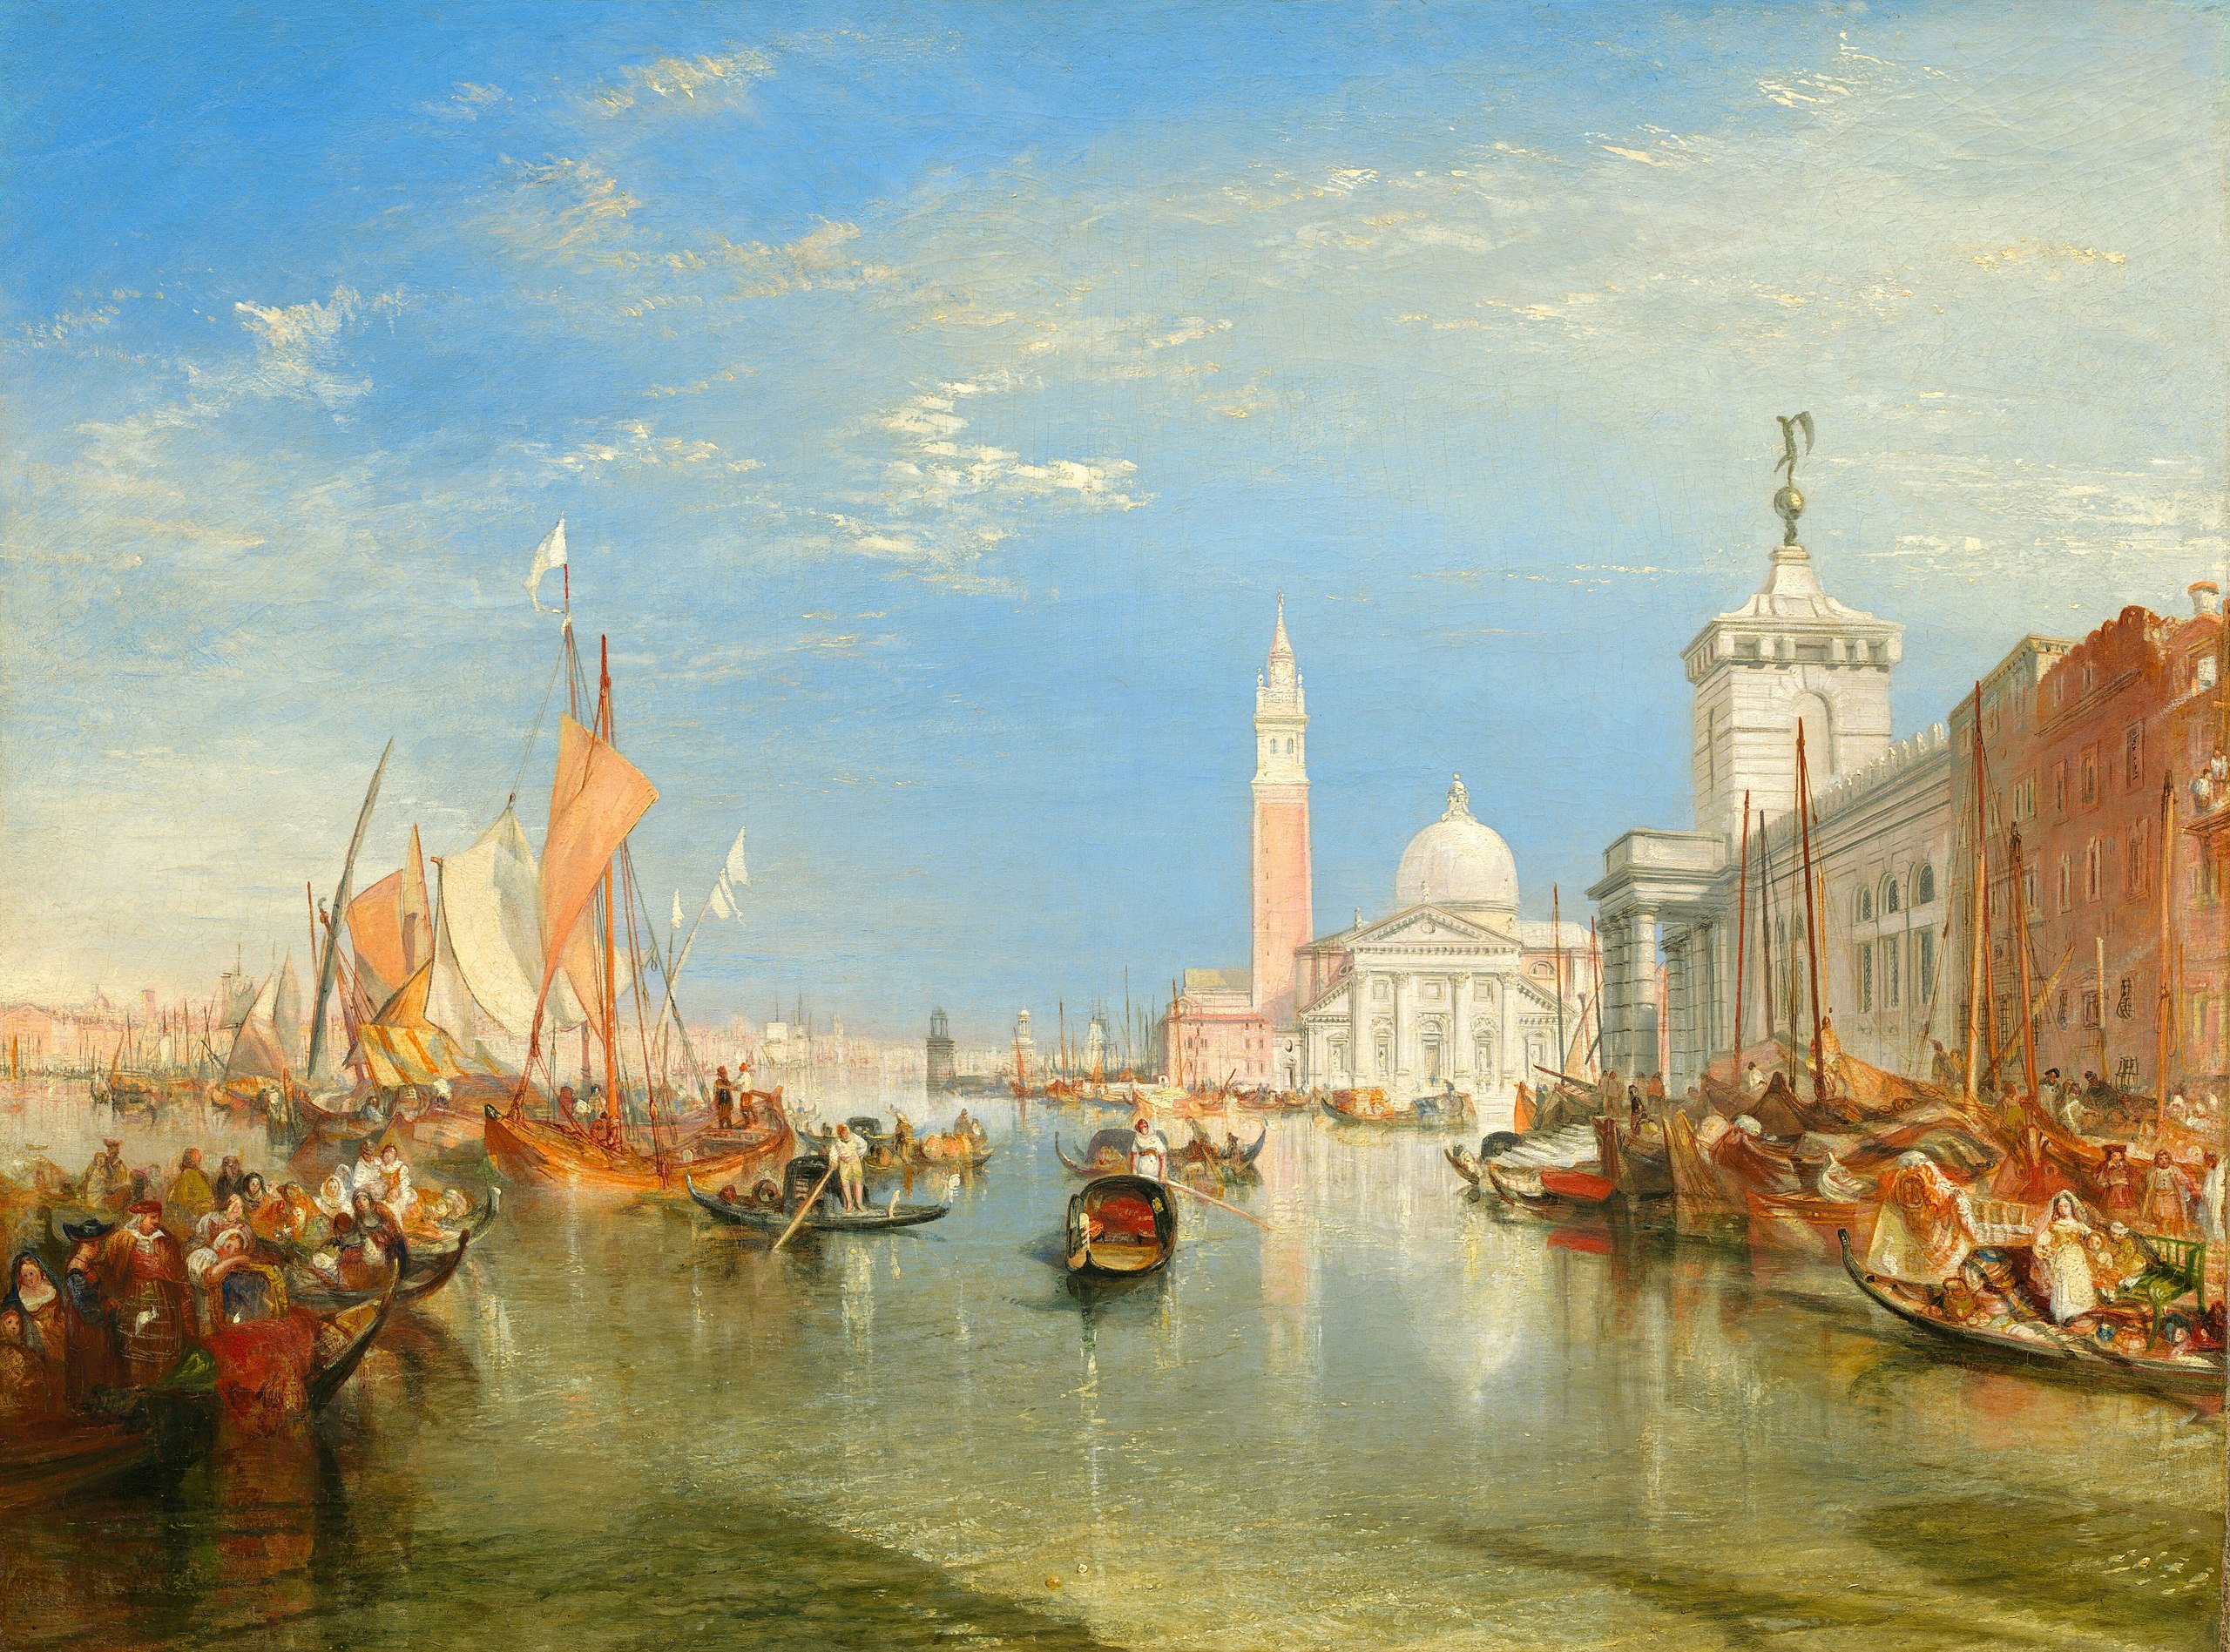 ヴェネツィア、ドガーナとサン・ジョルジョ・マッジョーレ by Joseph Mallord William Turner - 1834年 - 91.5 x 122 cm 